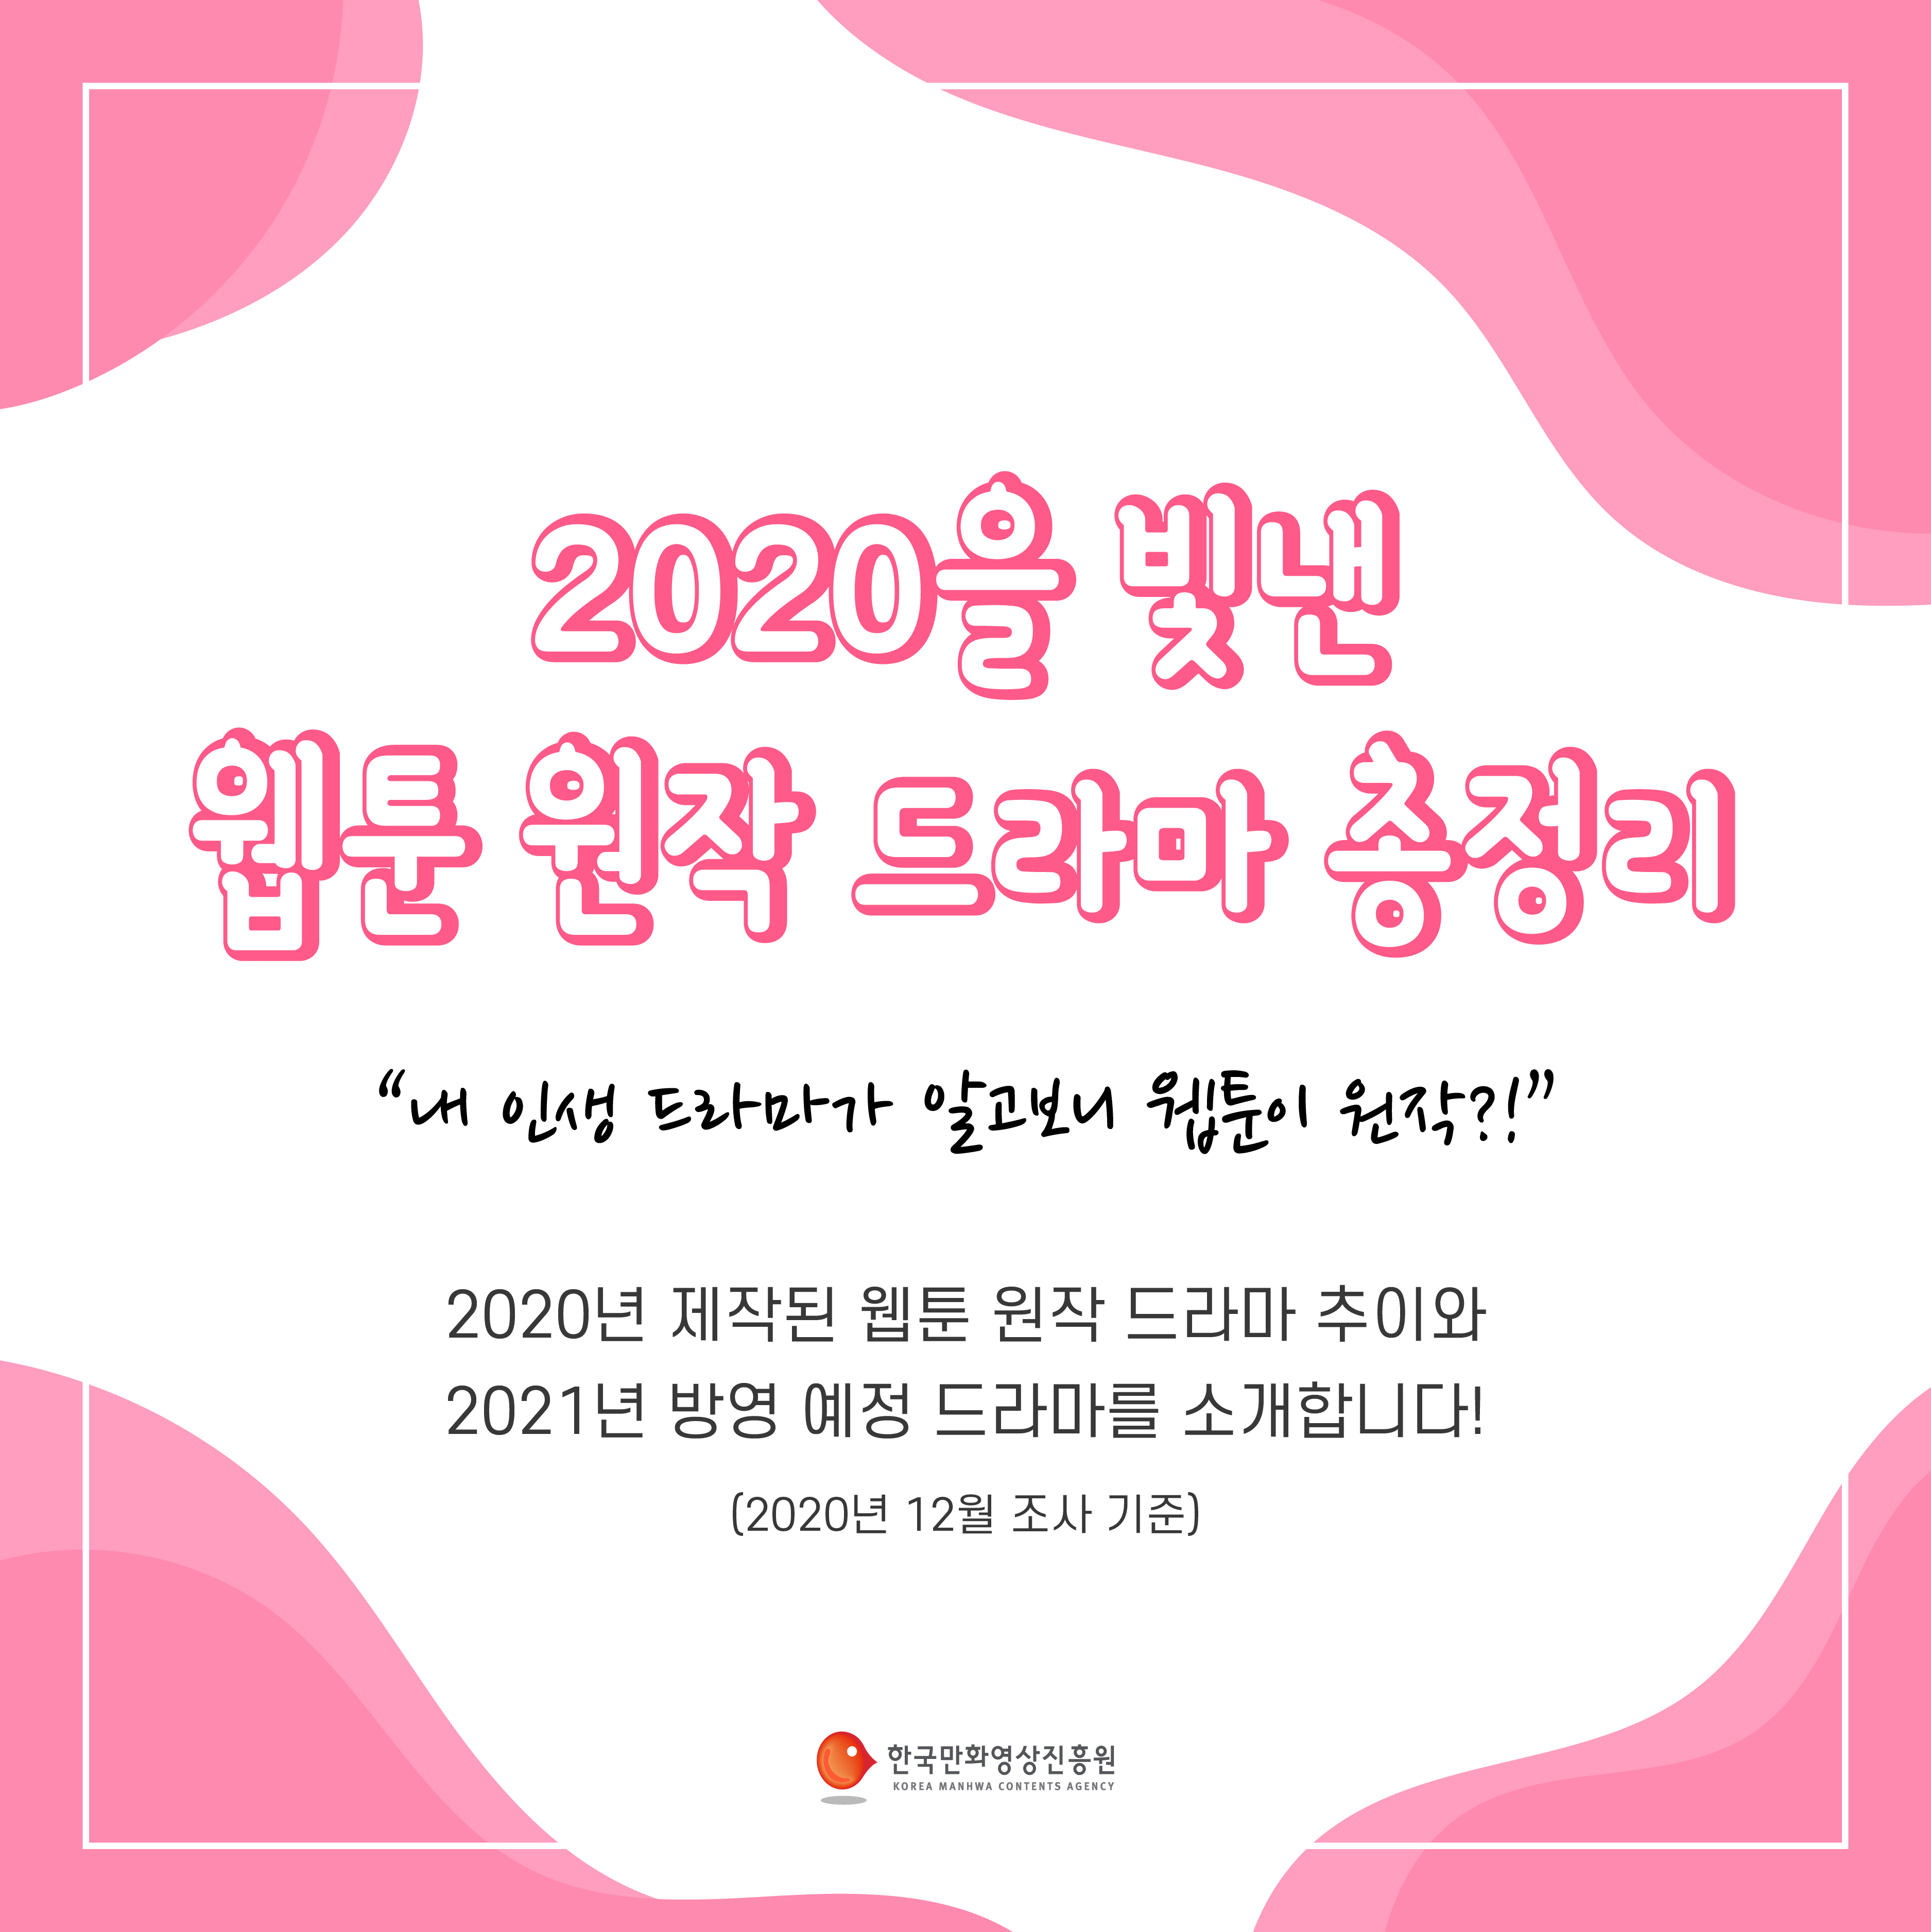 2020을 빛낸 웹툰 원작 드라마 총정리 카드뉴스